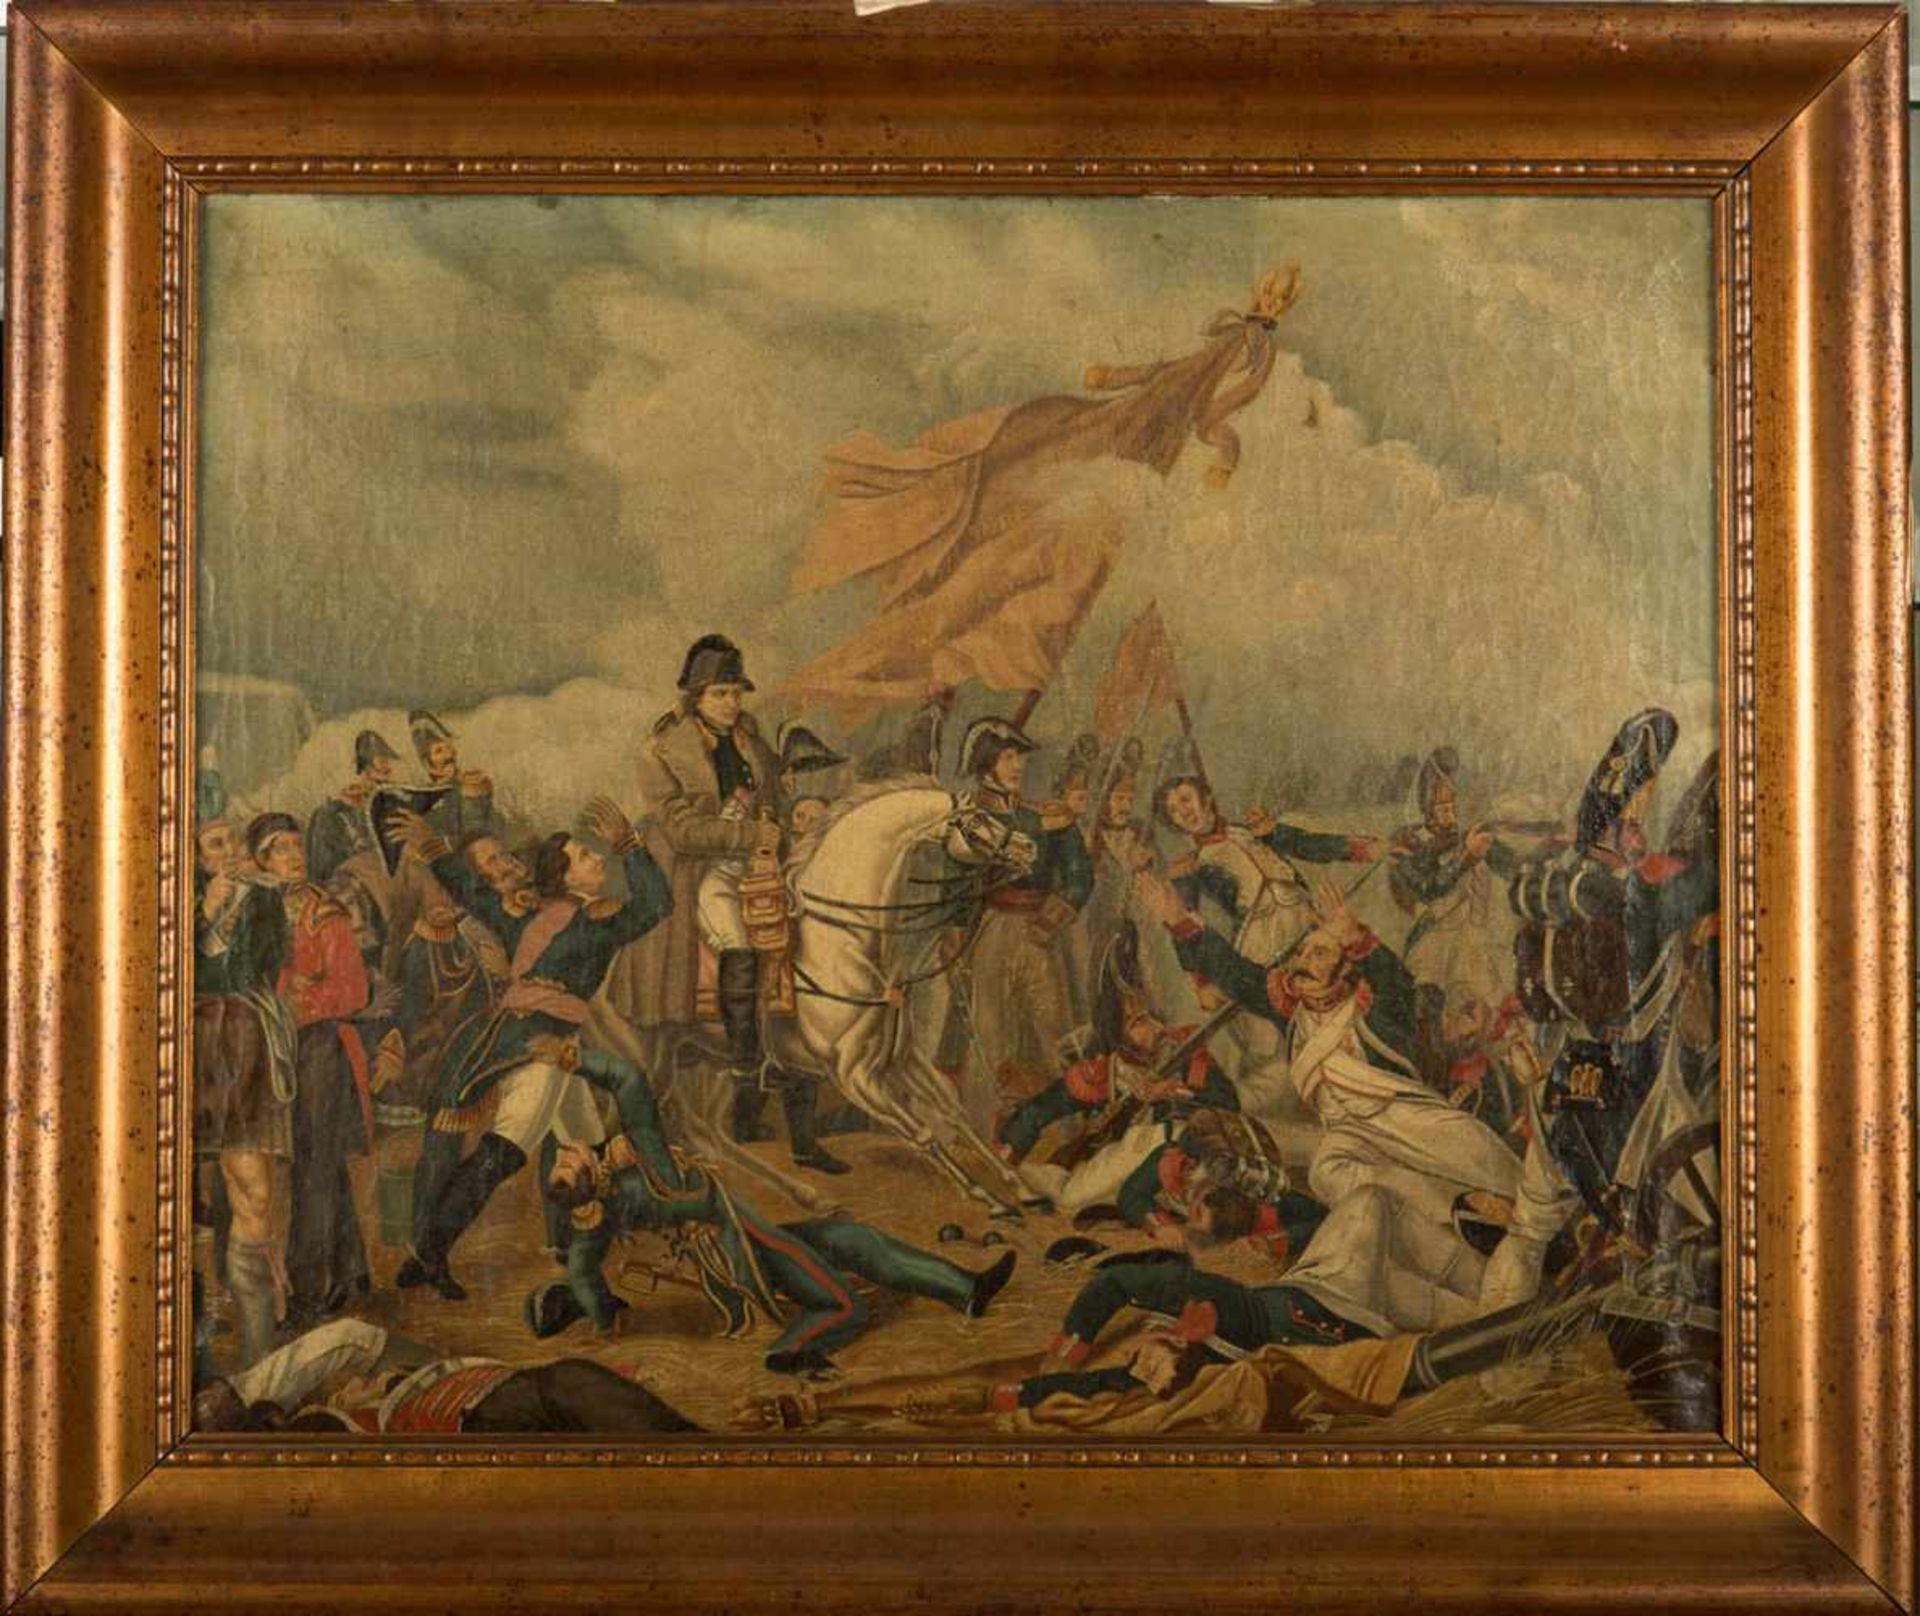 Kopist 19. Jh. Darstellung der Schlacht bei Waterloo. Öl/Leinwand. 56 x 69 cm. R.